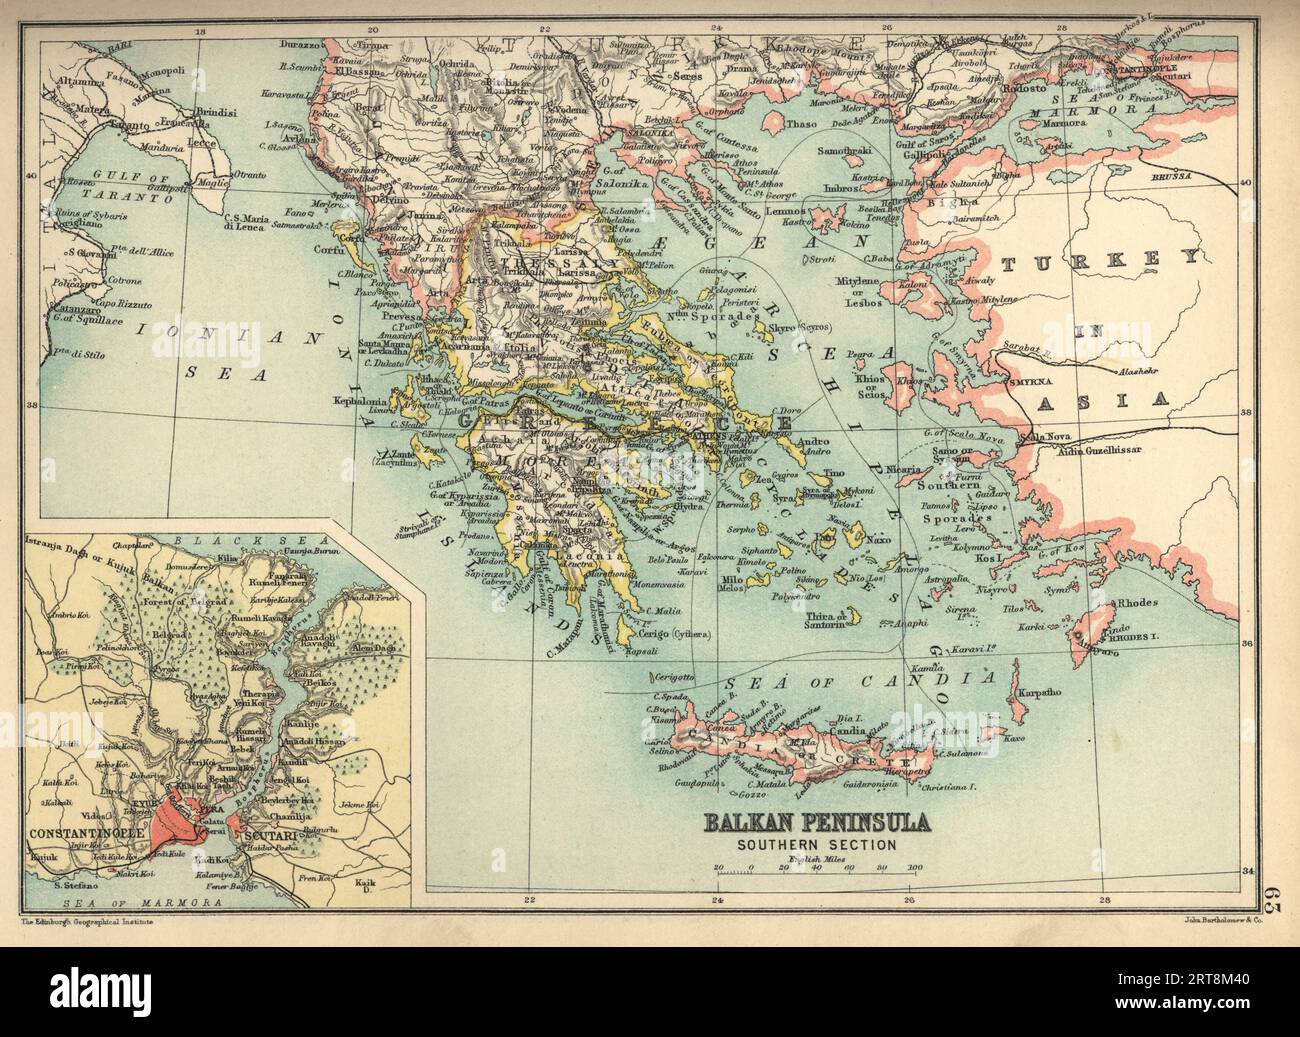 Antike Karte der Balkanhalbinsel, Südteil, mit Details über die Umgebung von Konstantinopel, Griechenland, Türkei, Kreta, 19. Jahrhundert, 1890er Jahre Stockfoto